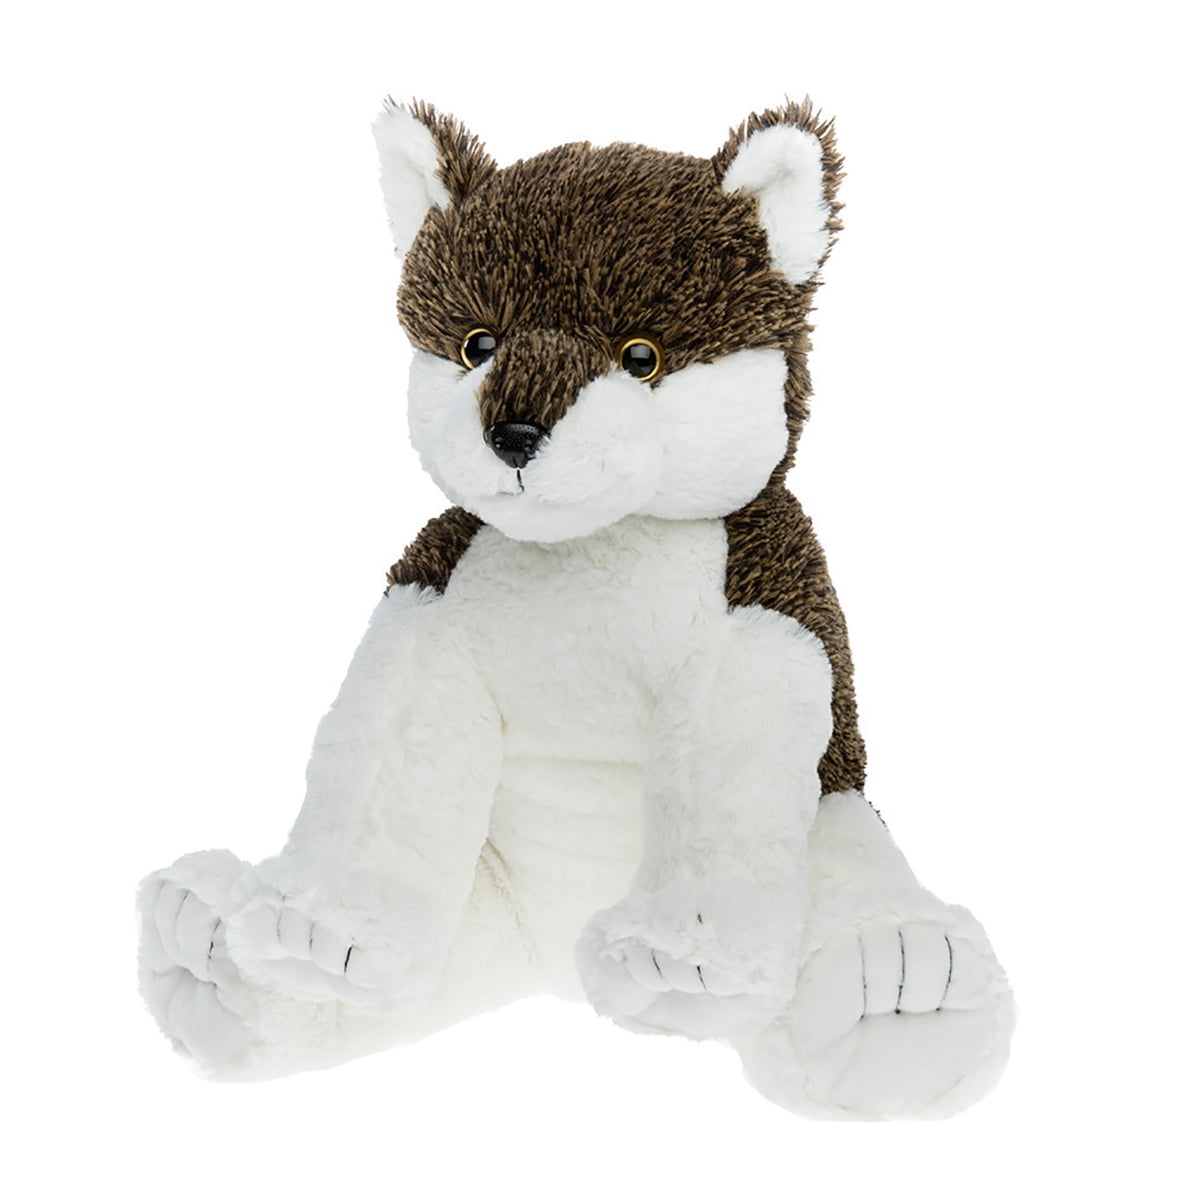 Teddy Mountain Cuddly Soft 8 inch Stuffed Wolf...We stuff 'em...you love 'em! 